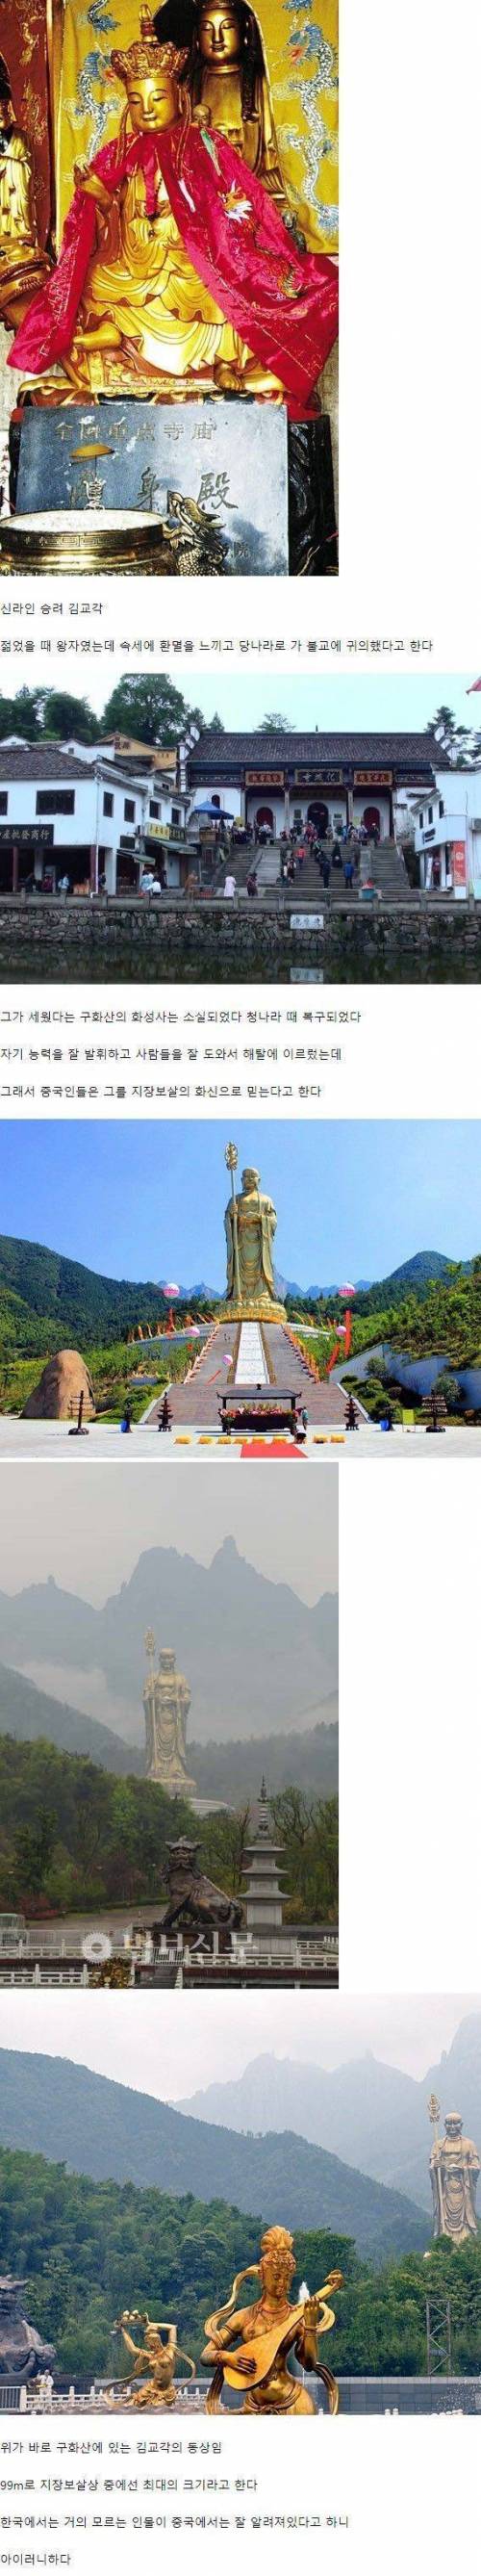 중국에 있는 한국인 동상